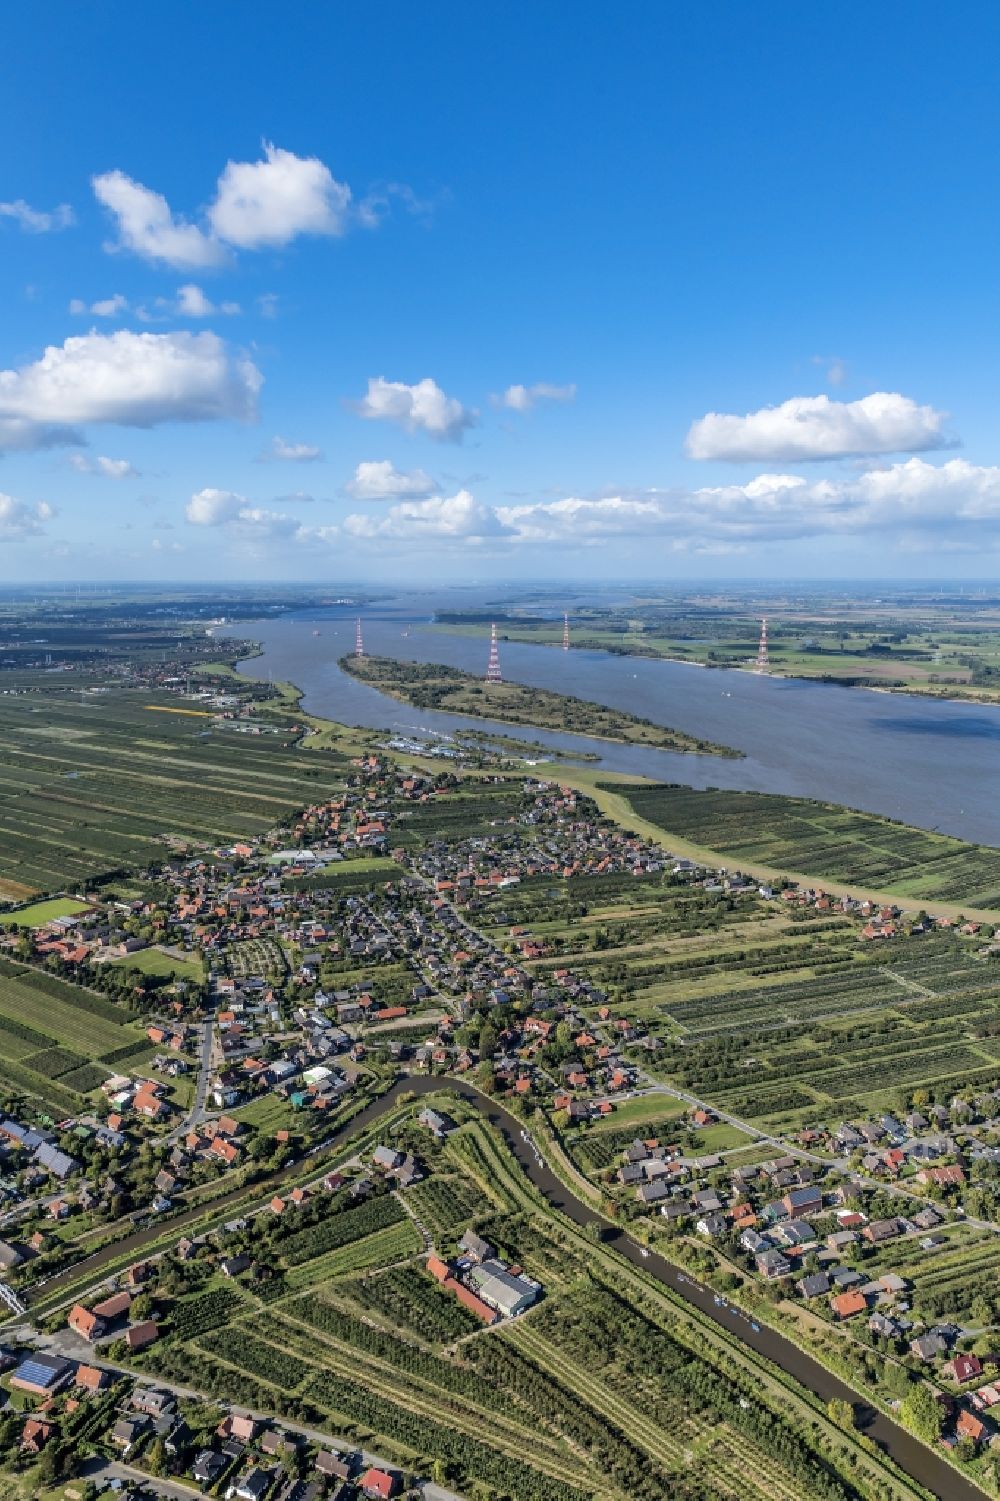 Luftaufnahme Lühesand - Festland und Insel des Flußverlaufes Elbe Grünendeich und Lühesand im Bundesland Niedersachsen, Deutschland